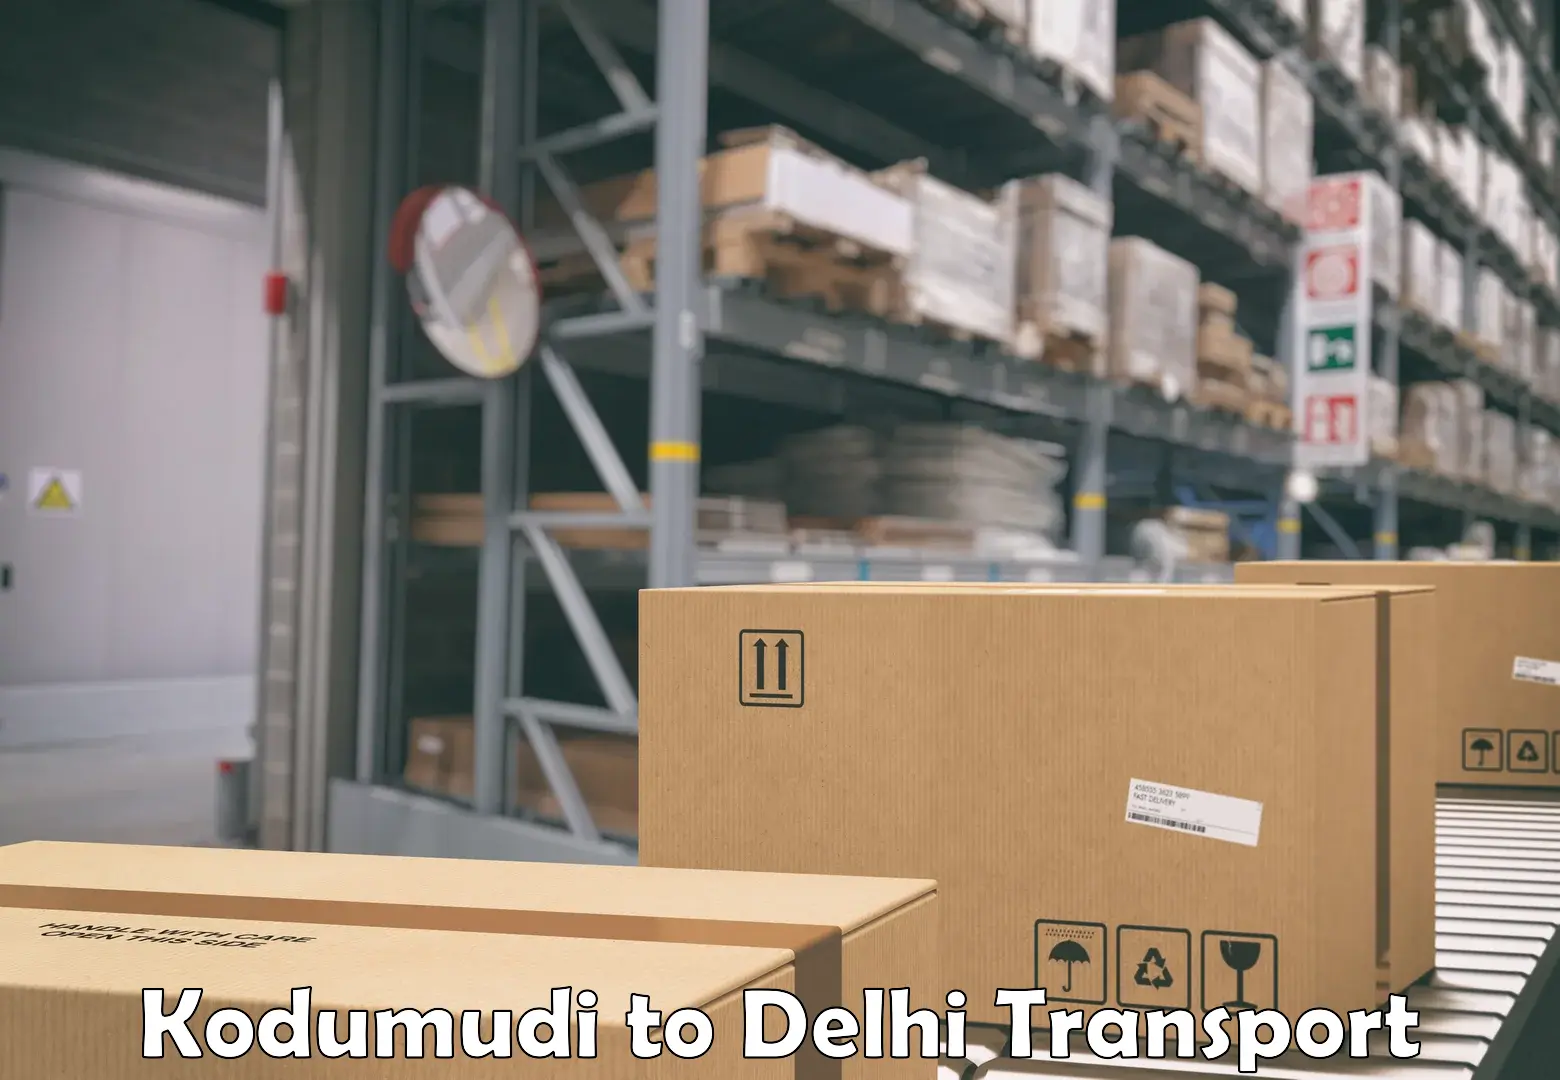 Online transport service Kodumudi to IIT Delhi